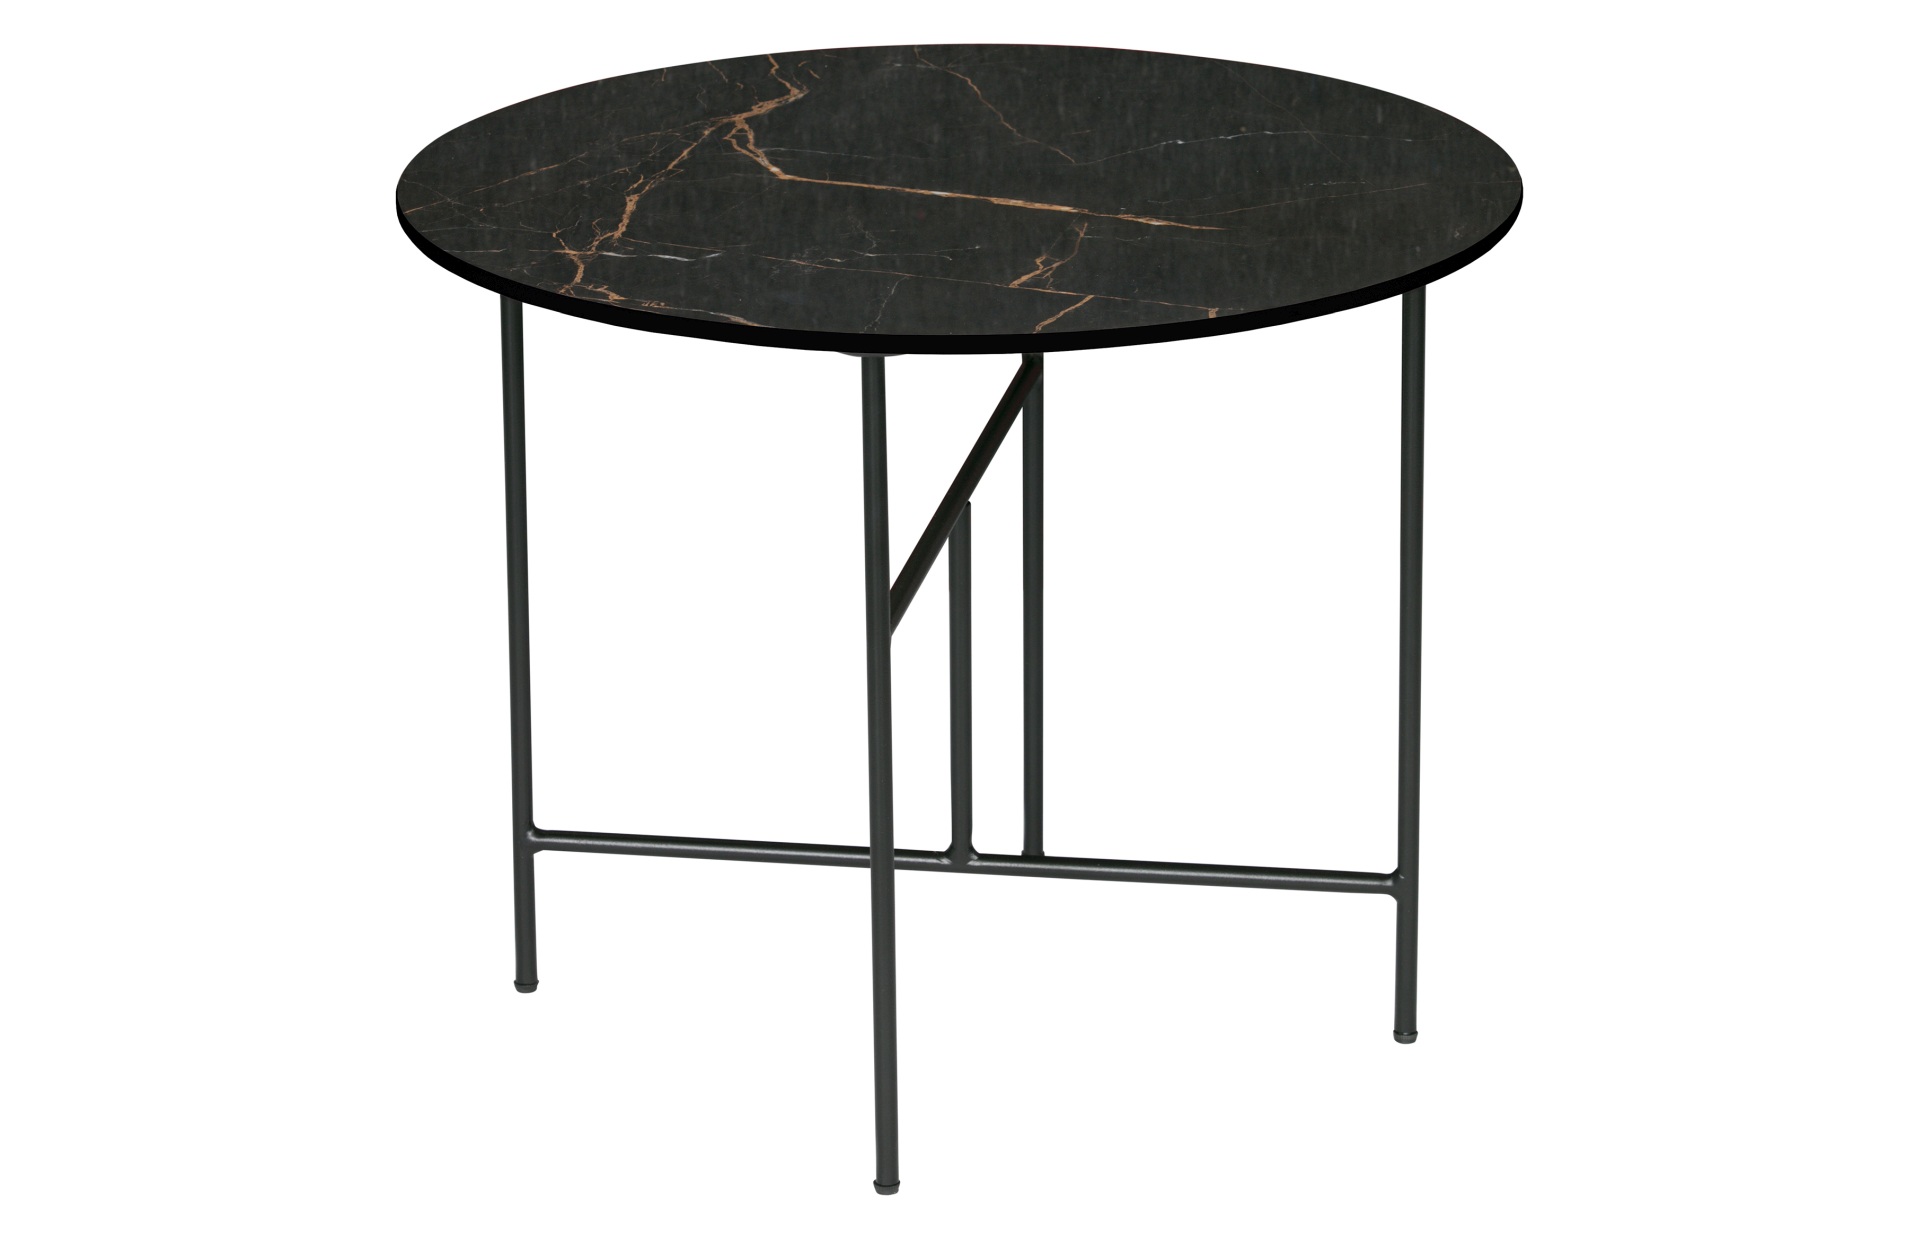 Der Couchtisch Vida überzeugt mit seinem modernen Design. Das Gestell wurde aus Metall gefertigt und hat einne schwarzen Farbton. Die Tischplatte ist aus Porzellan und hat eine Marmoroptik.